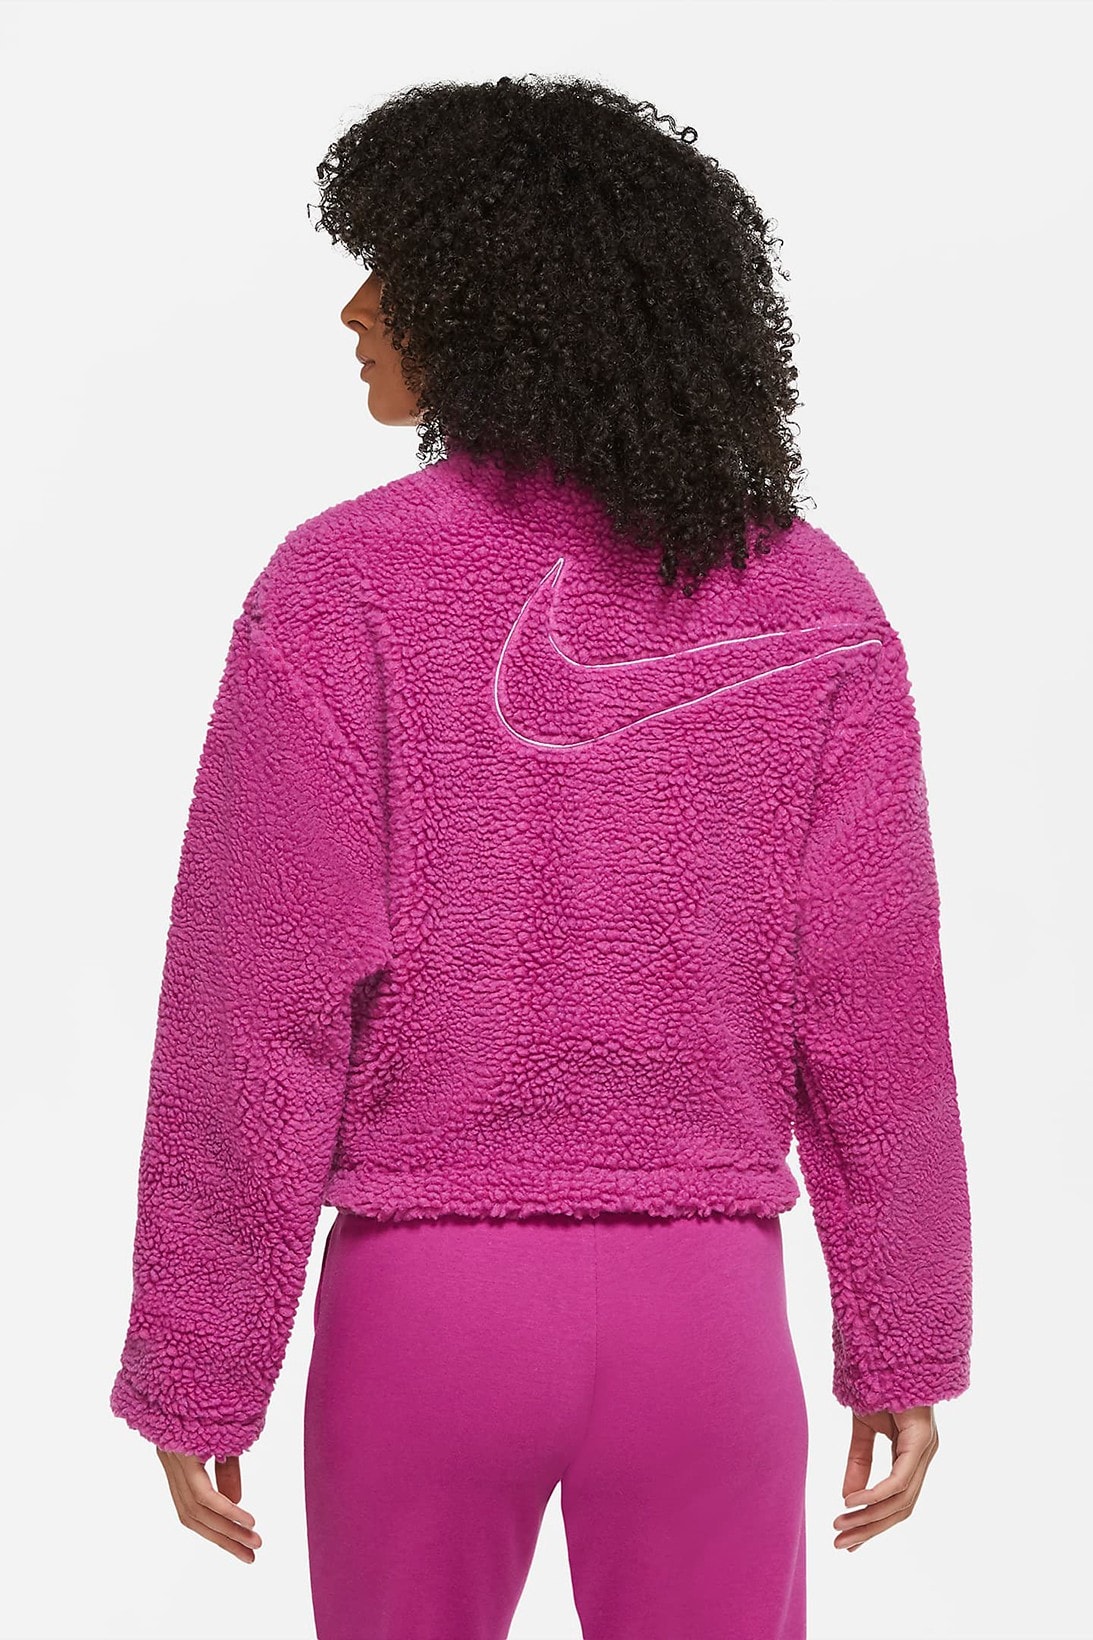 nike sportswear womens swoosh shearling fleece jacket outerwear pink white orange colorways 2020 fw